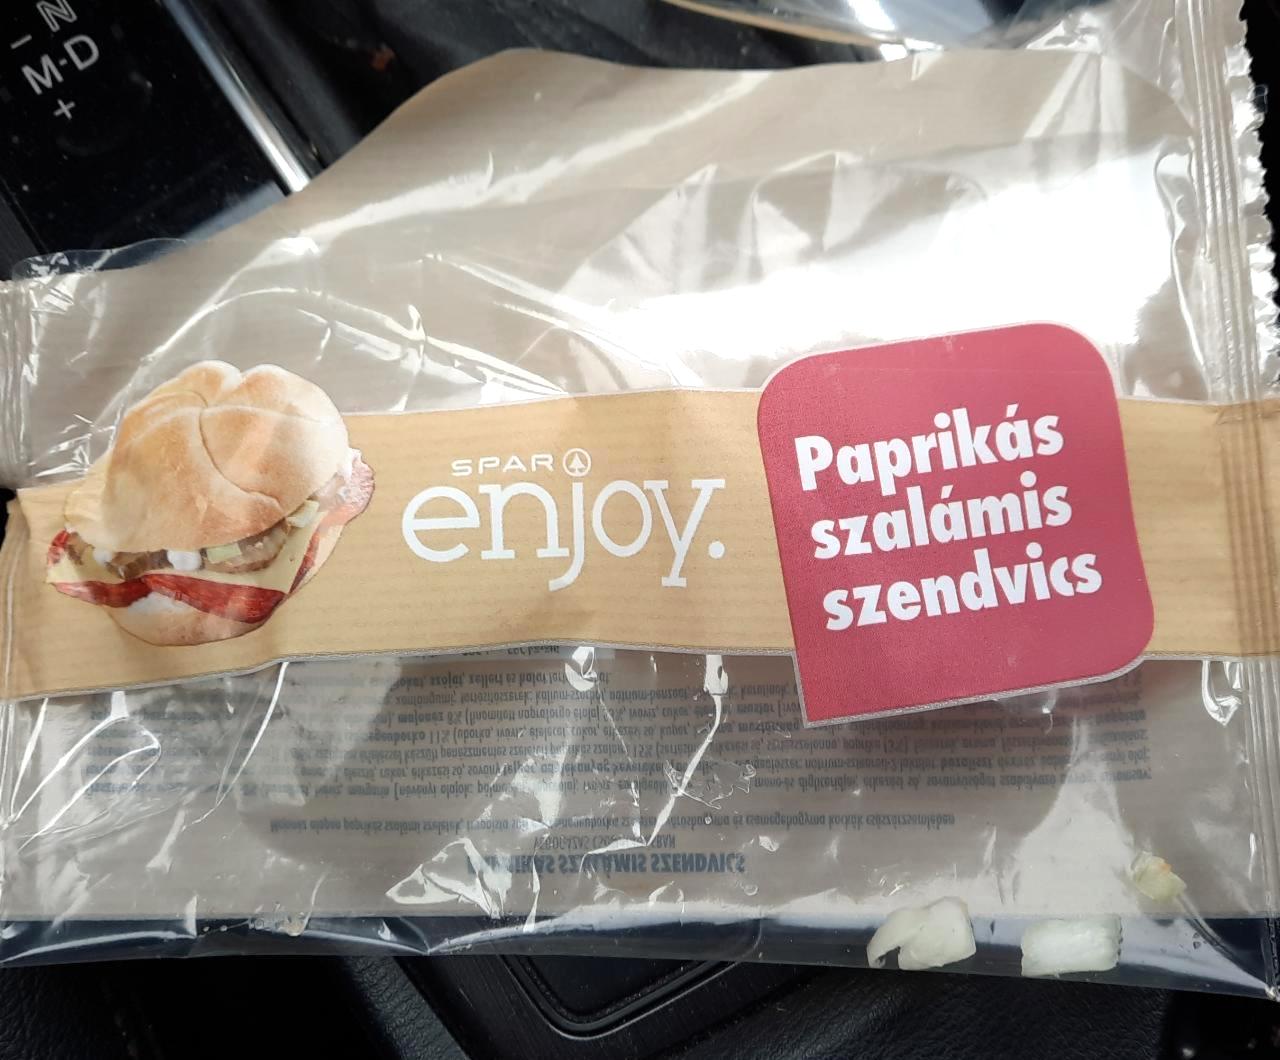 Képek - Paprikás szalámis szendvics Spar enjoy